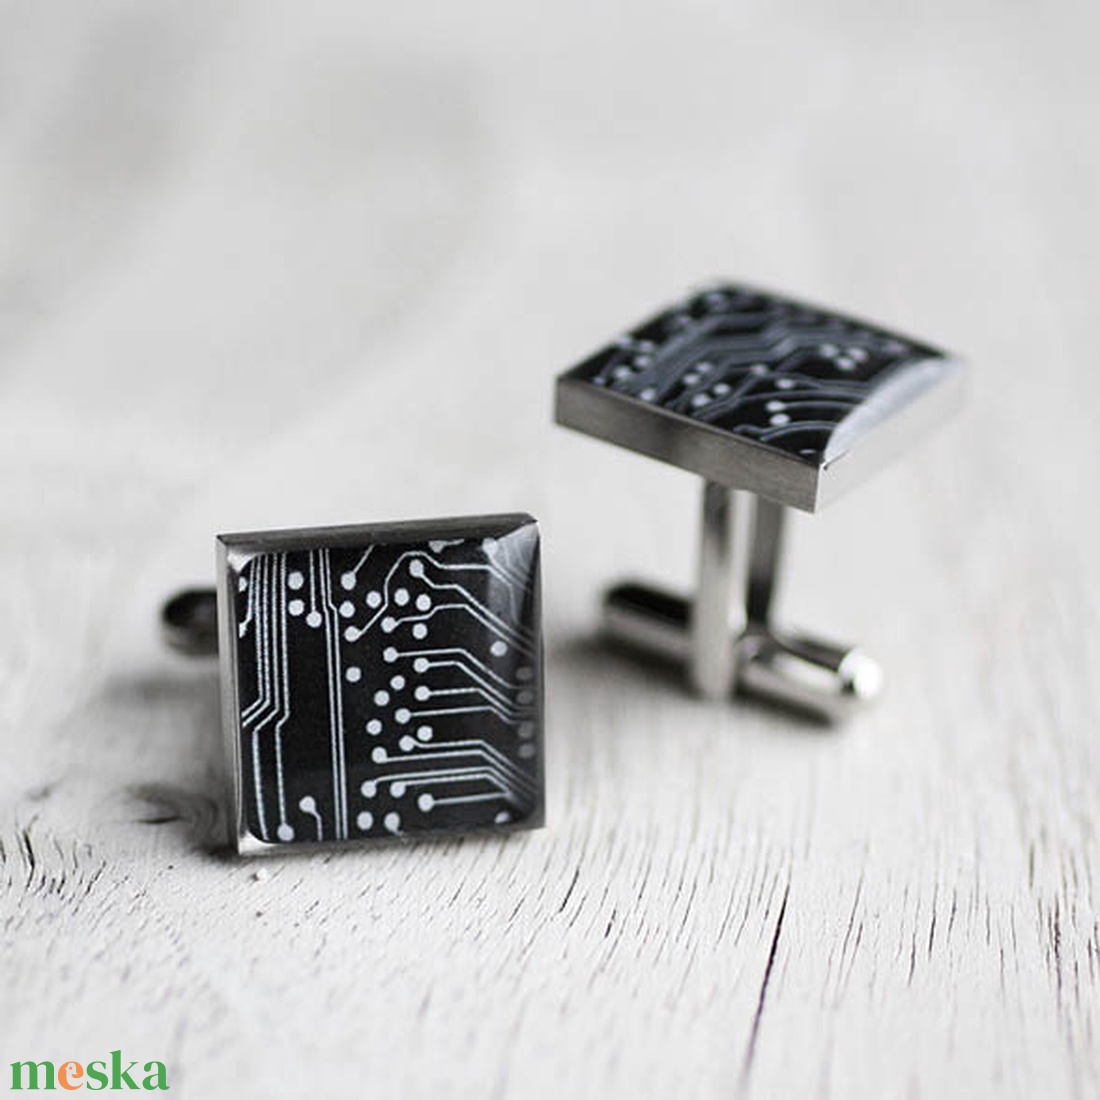 Fekete nyomtatott áramkör mandzsetta gombok (szögletes, orvosi acél) - ékszer - mandzsettagomb és nyakkendőtű - Meska.hu